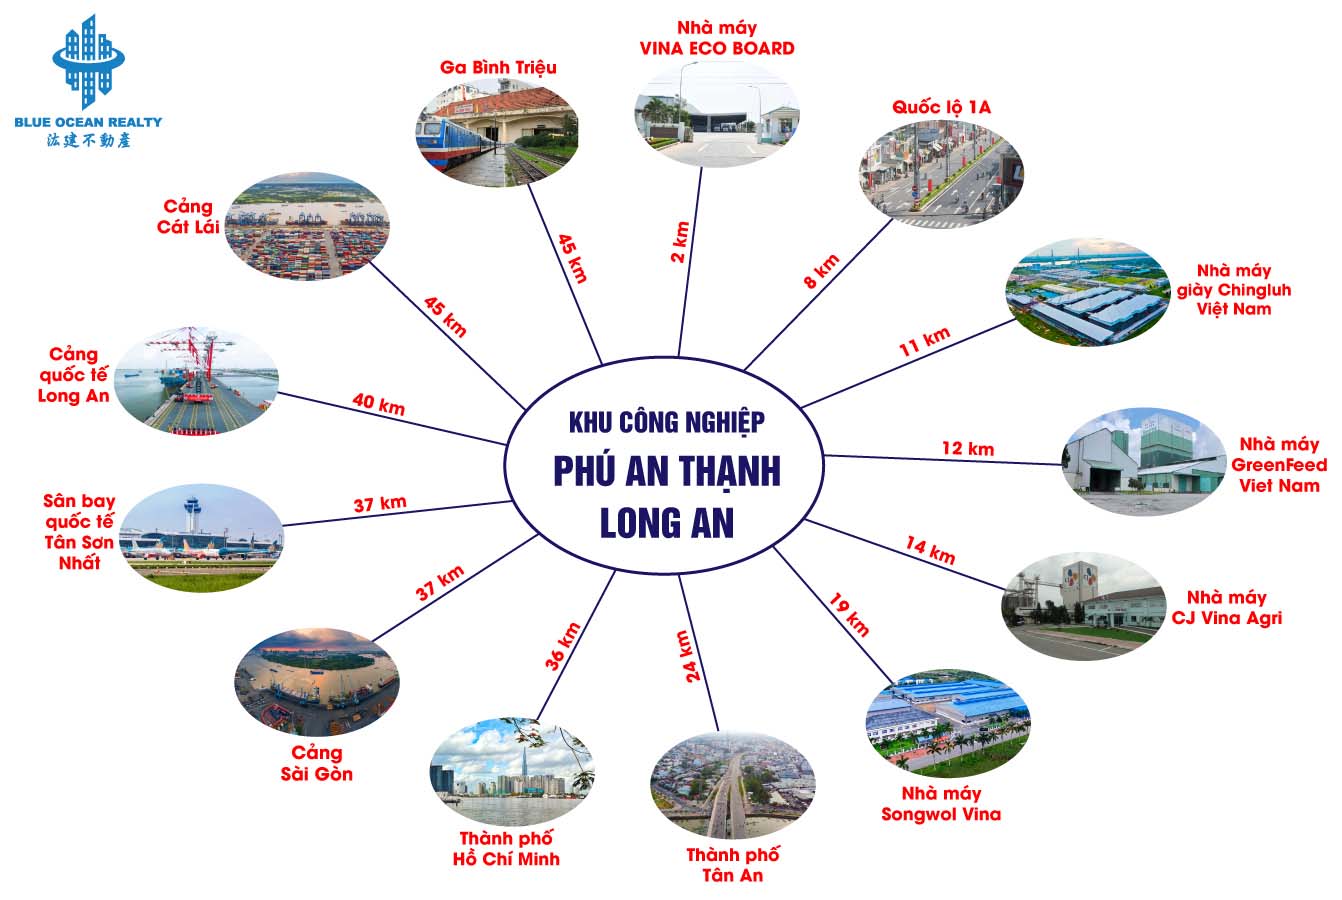 Khu công nghiệp Phú An Thạnh - Long An